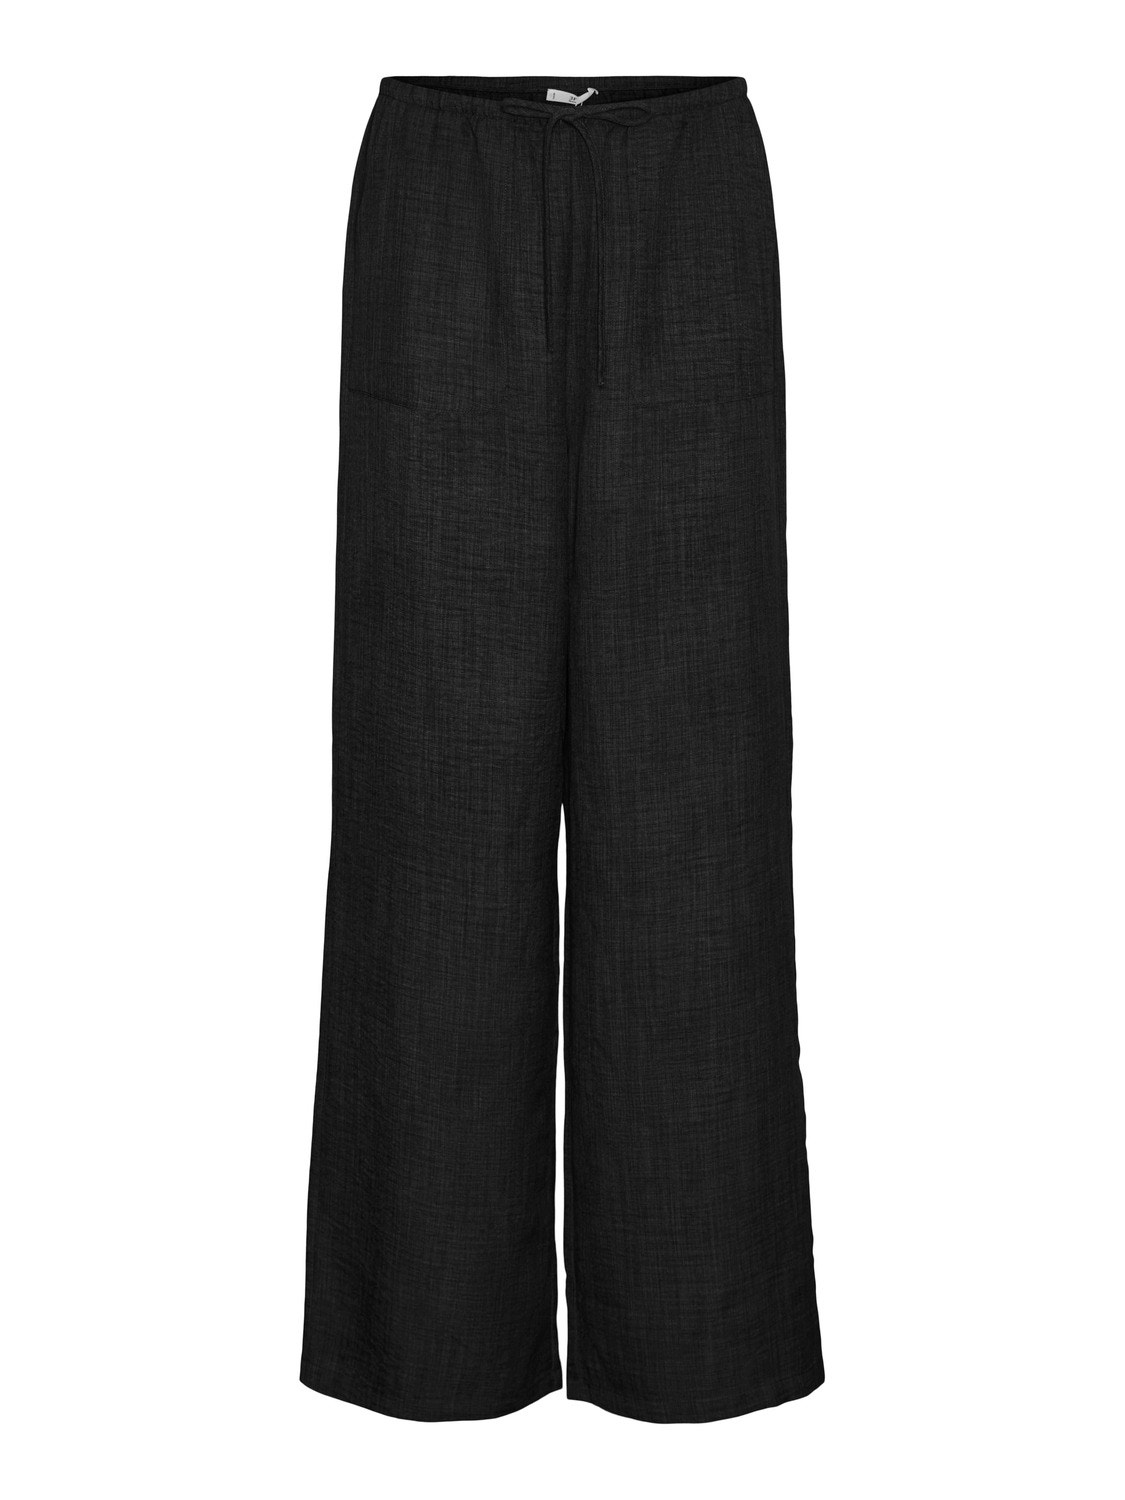 Vero Moda VMMELANEY High waist Trousers -Black - 10316385